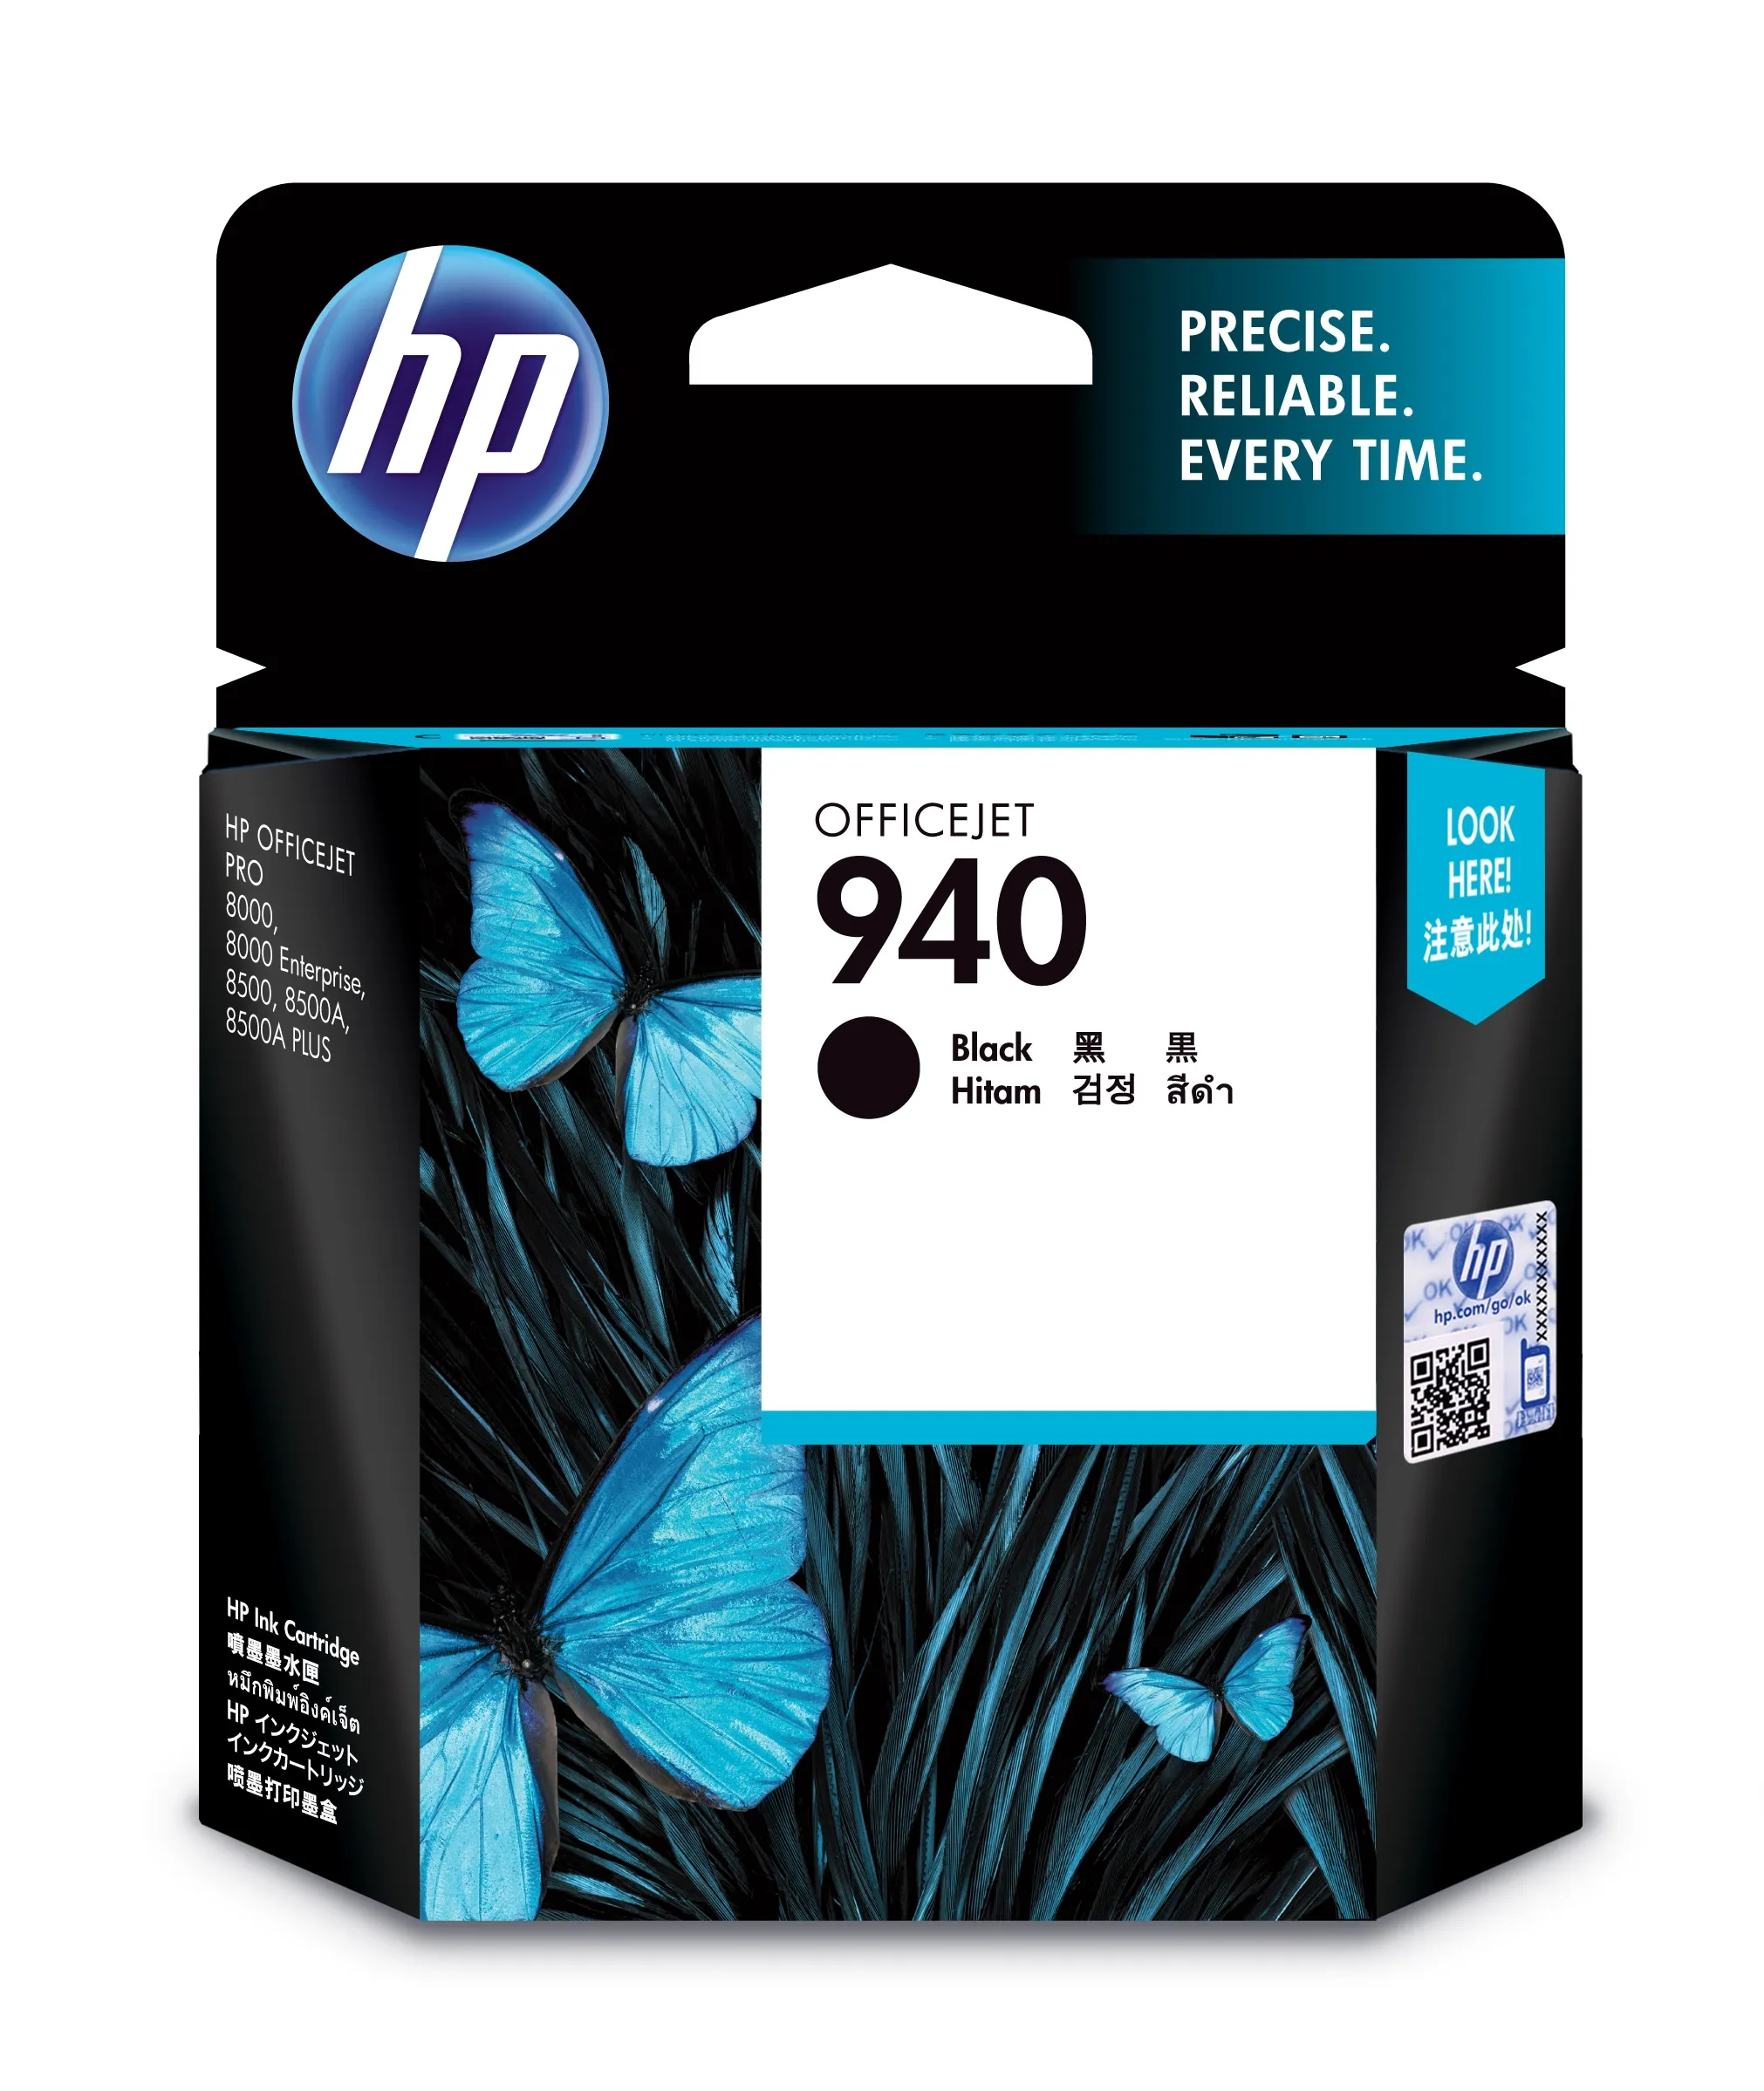 Vente HP 940 Noir Blister - cartouche périmée 2018 HP au meilleur prix - visuel 4